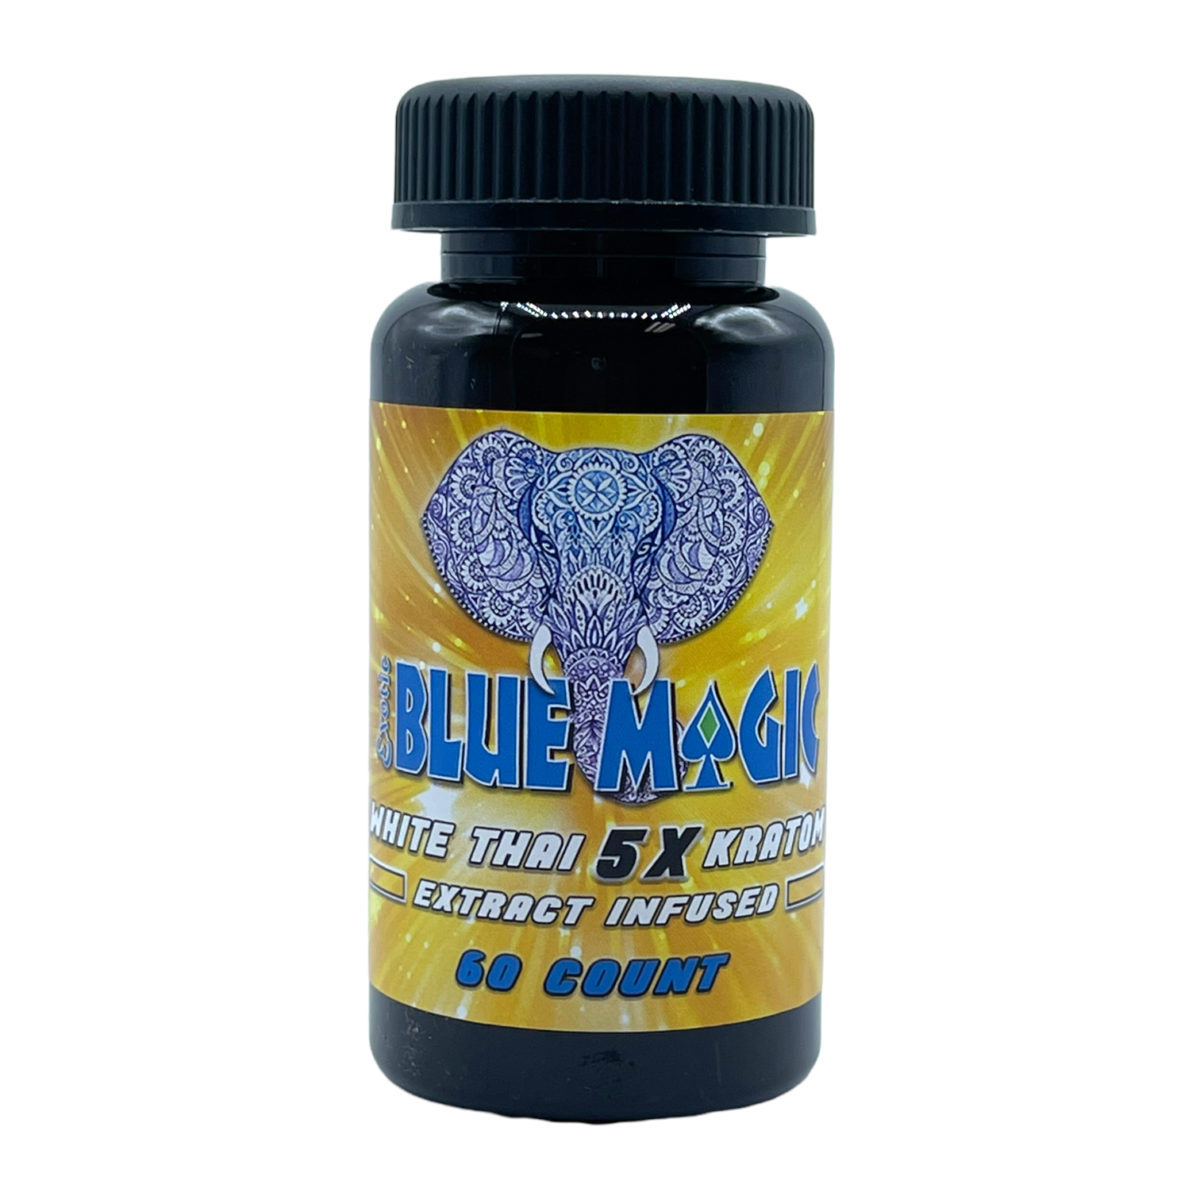 Blue Magic White Thai 5X Capsule – 60 count